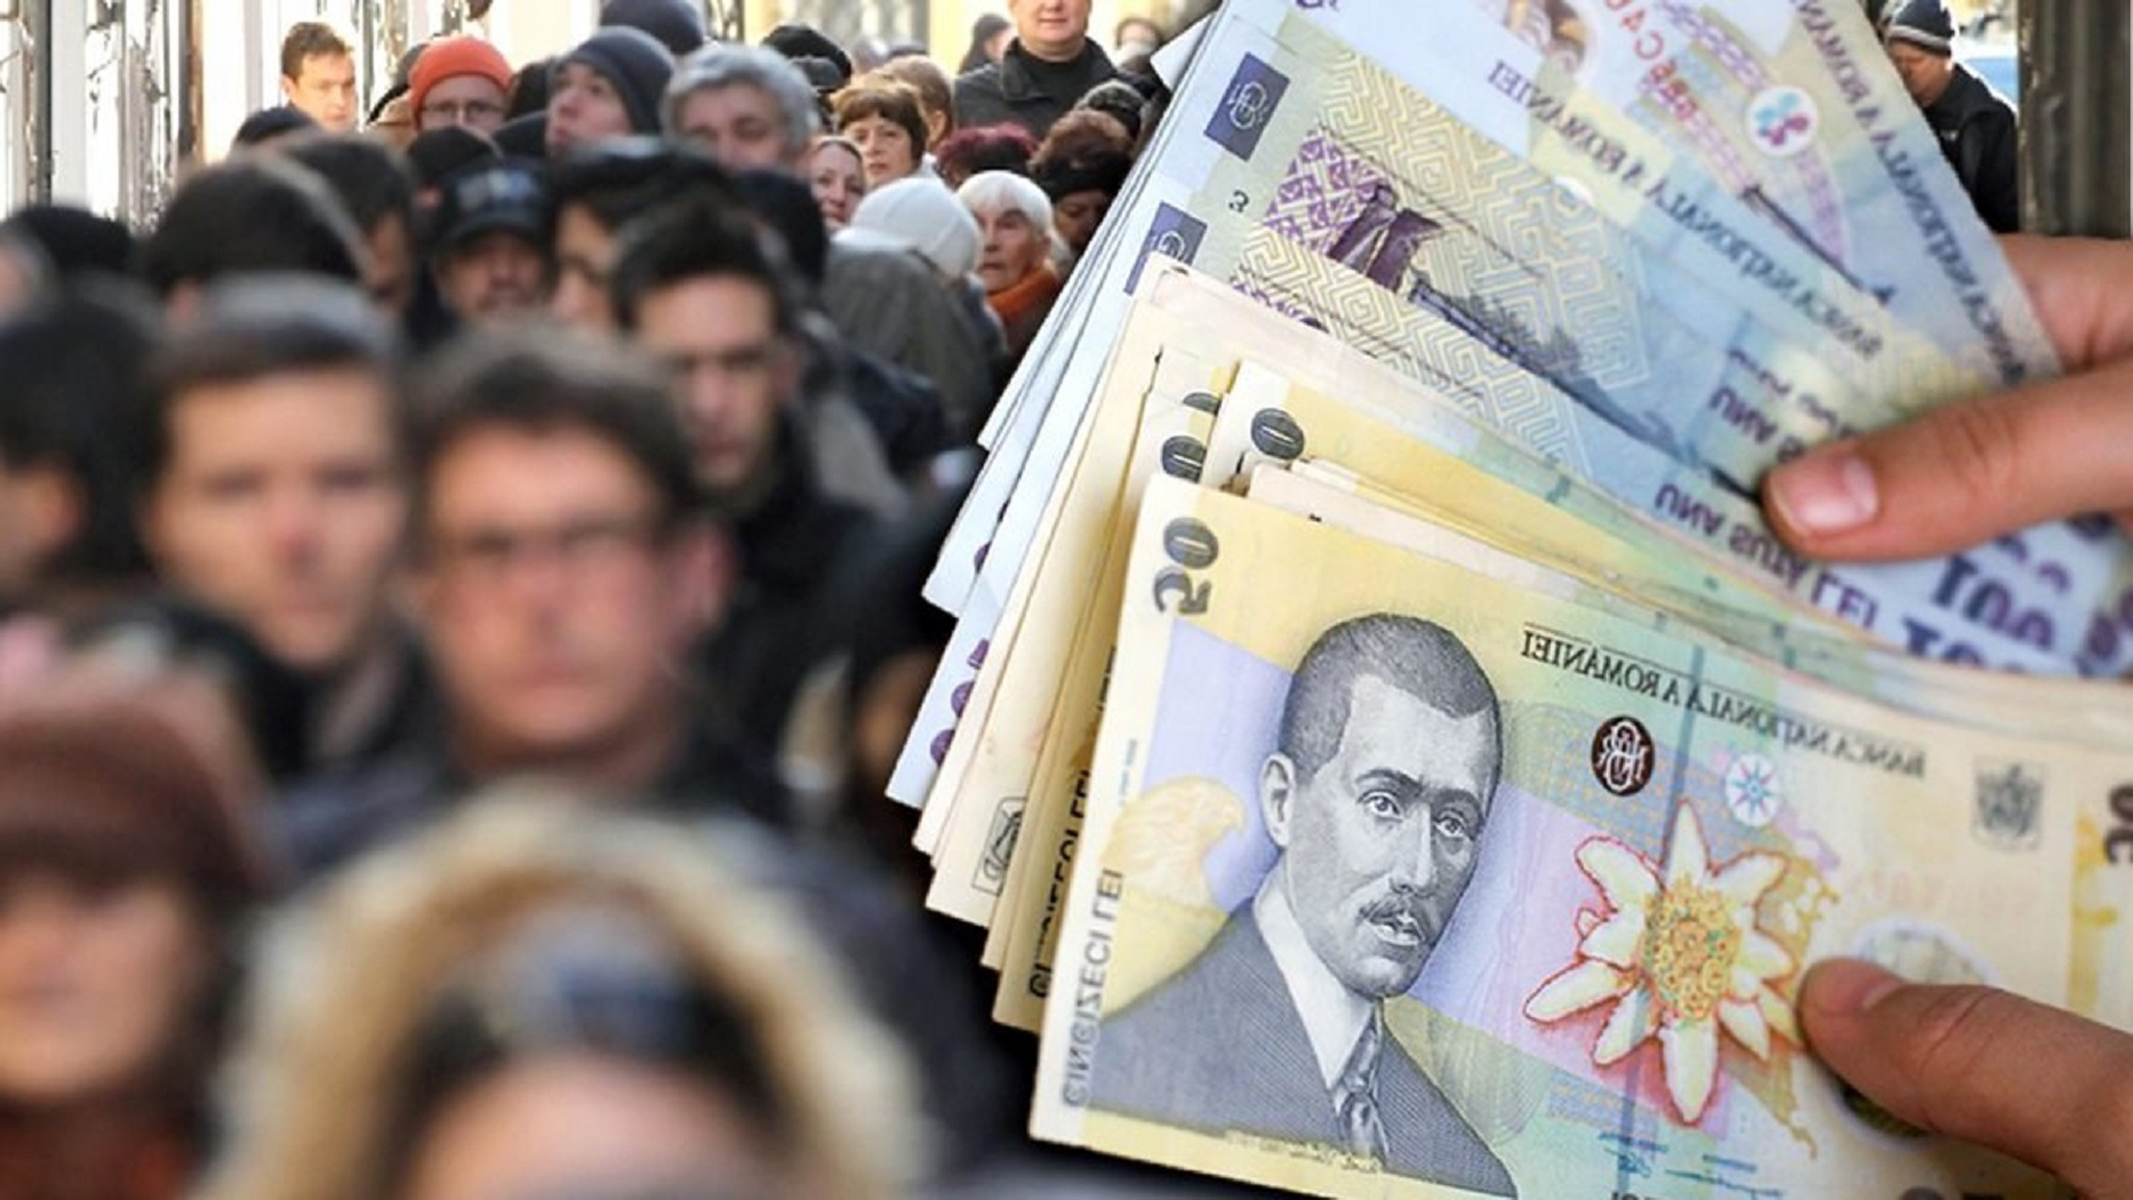 Vești proaste de la Comisia Europeană! Economia României scade drastic la jumătate. Pragul inflației va ajunge la 8,9%